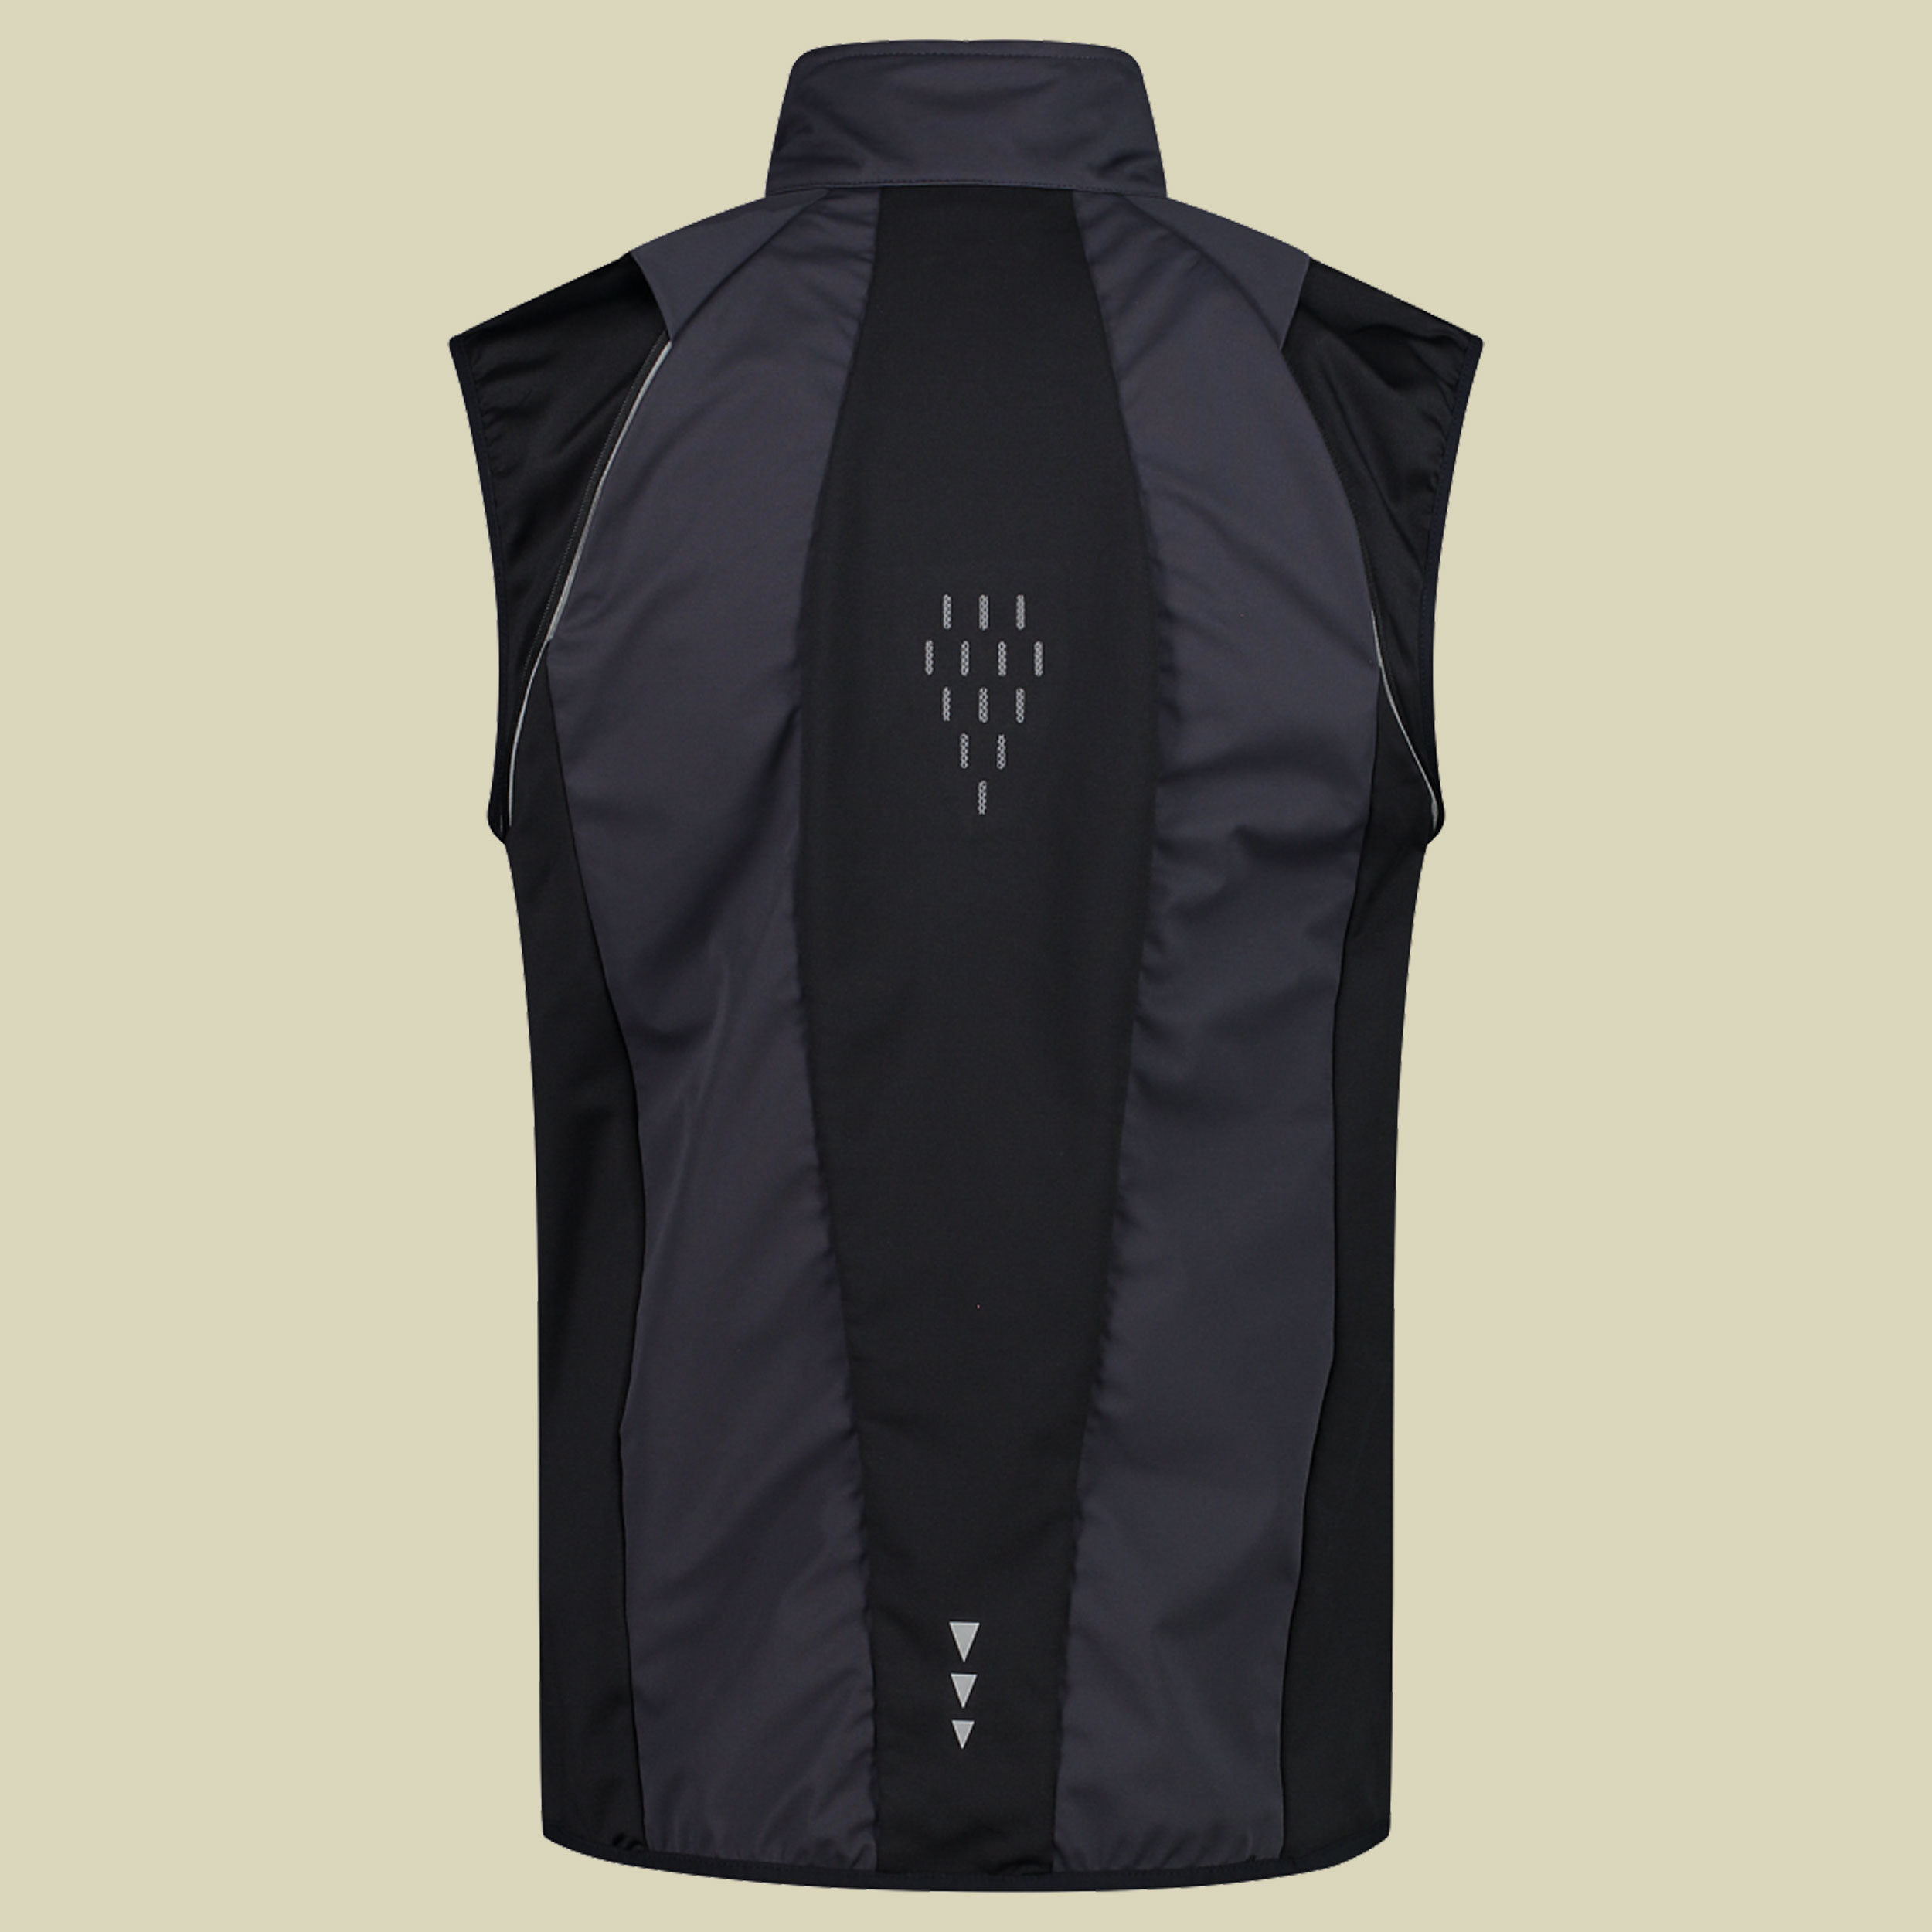 Man Jacket detachable Sleeves 30A2647 Größe 48 Farbe U423 antracite